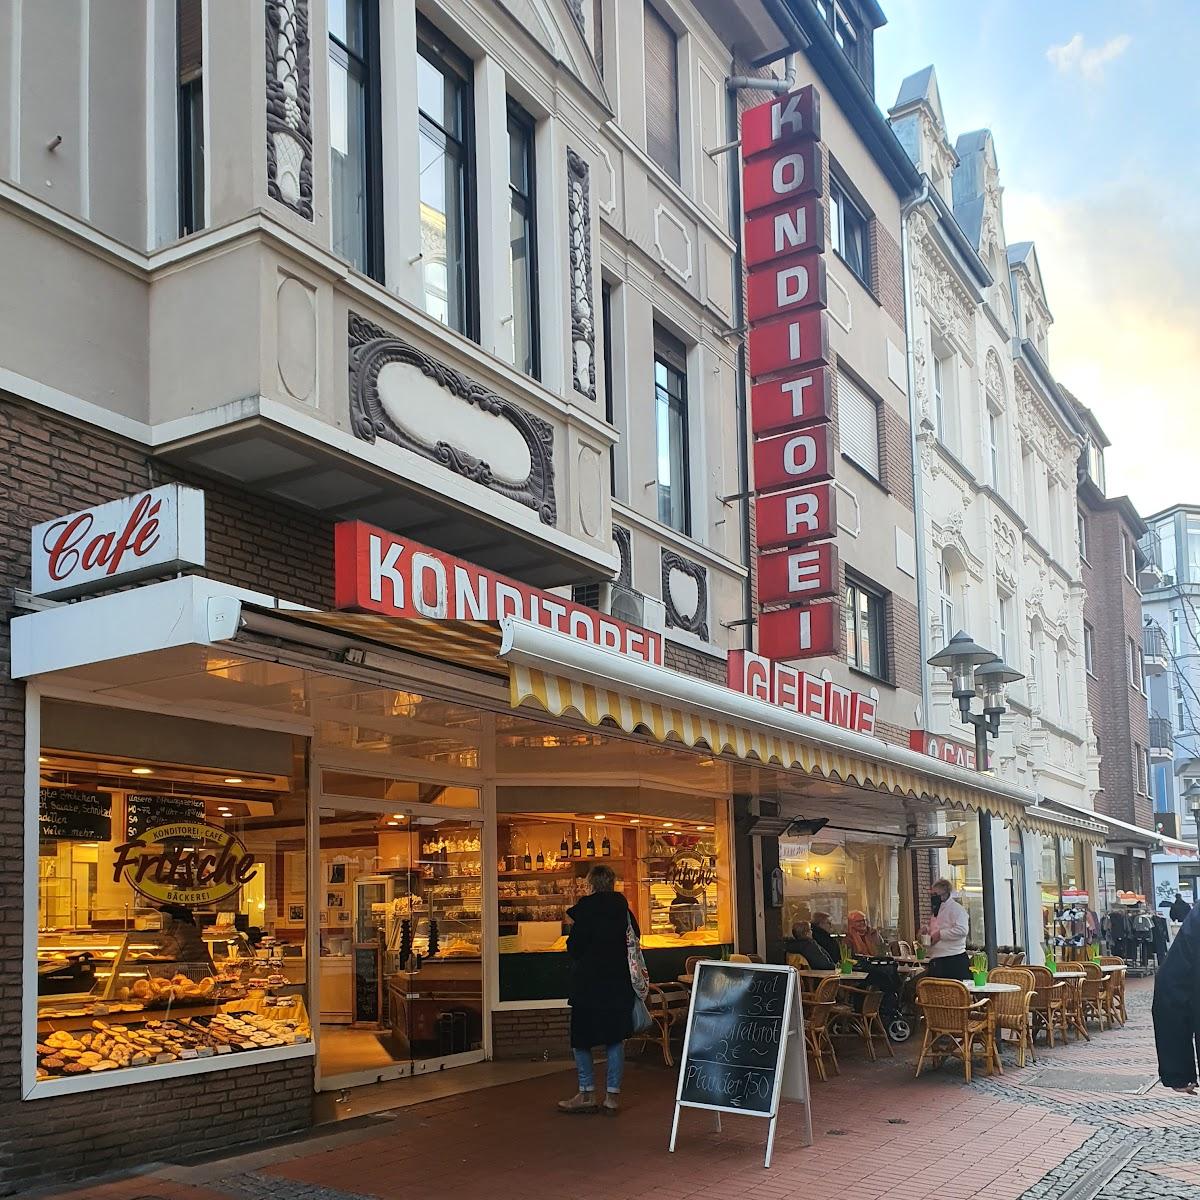 Restaurant "Konditorei Fritsche" in Essen